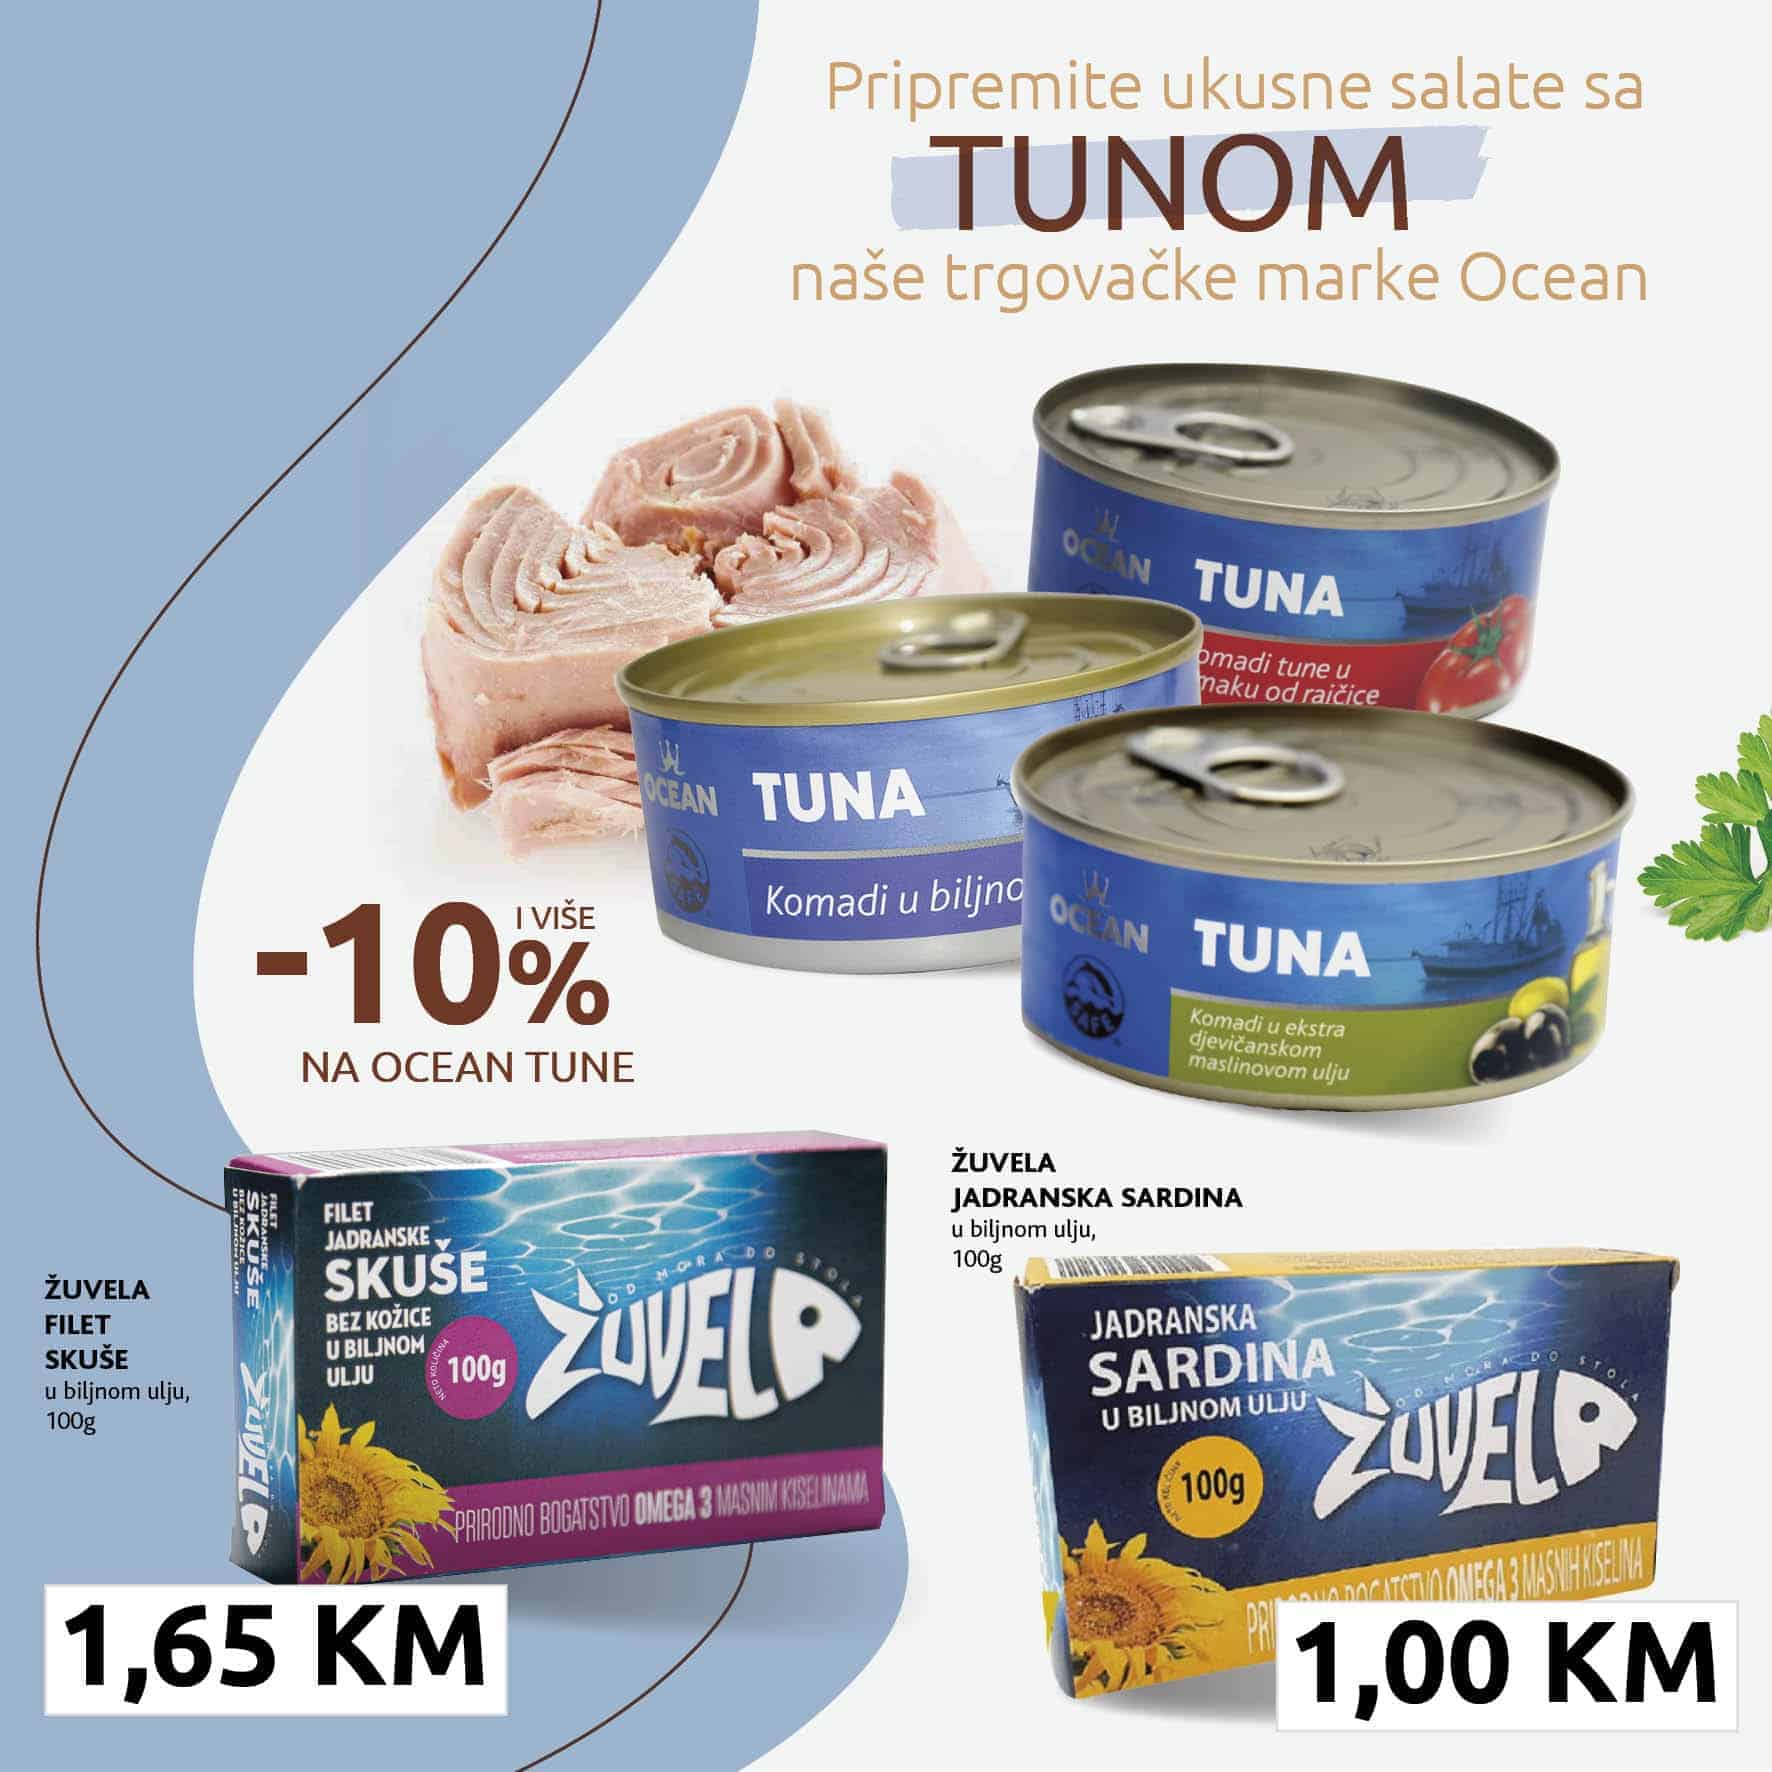 pripremite ukusne obroke sa tunom. tunjevina, komadi tunjevina. tuna u maslinovom ulju, tuna u biljnom ulju